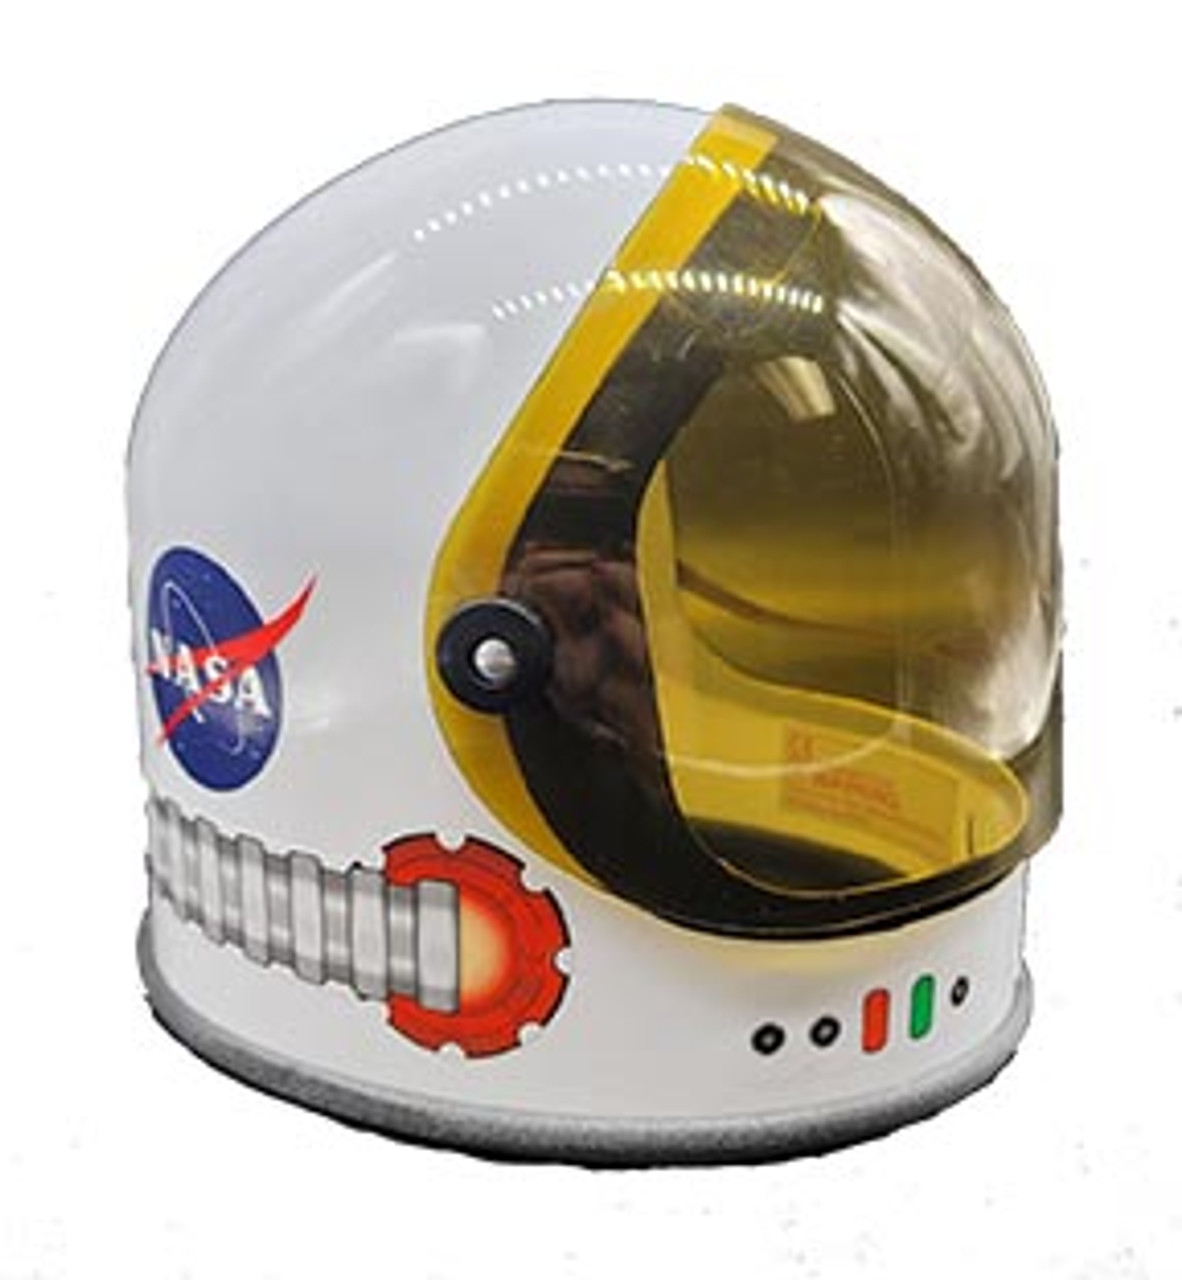 Orange Jr Astronaut Suit with Child Helmet (child size)